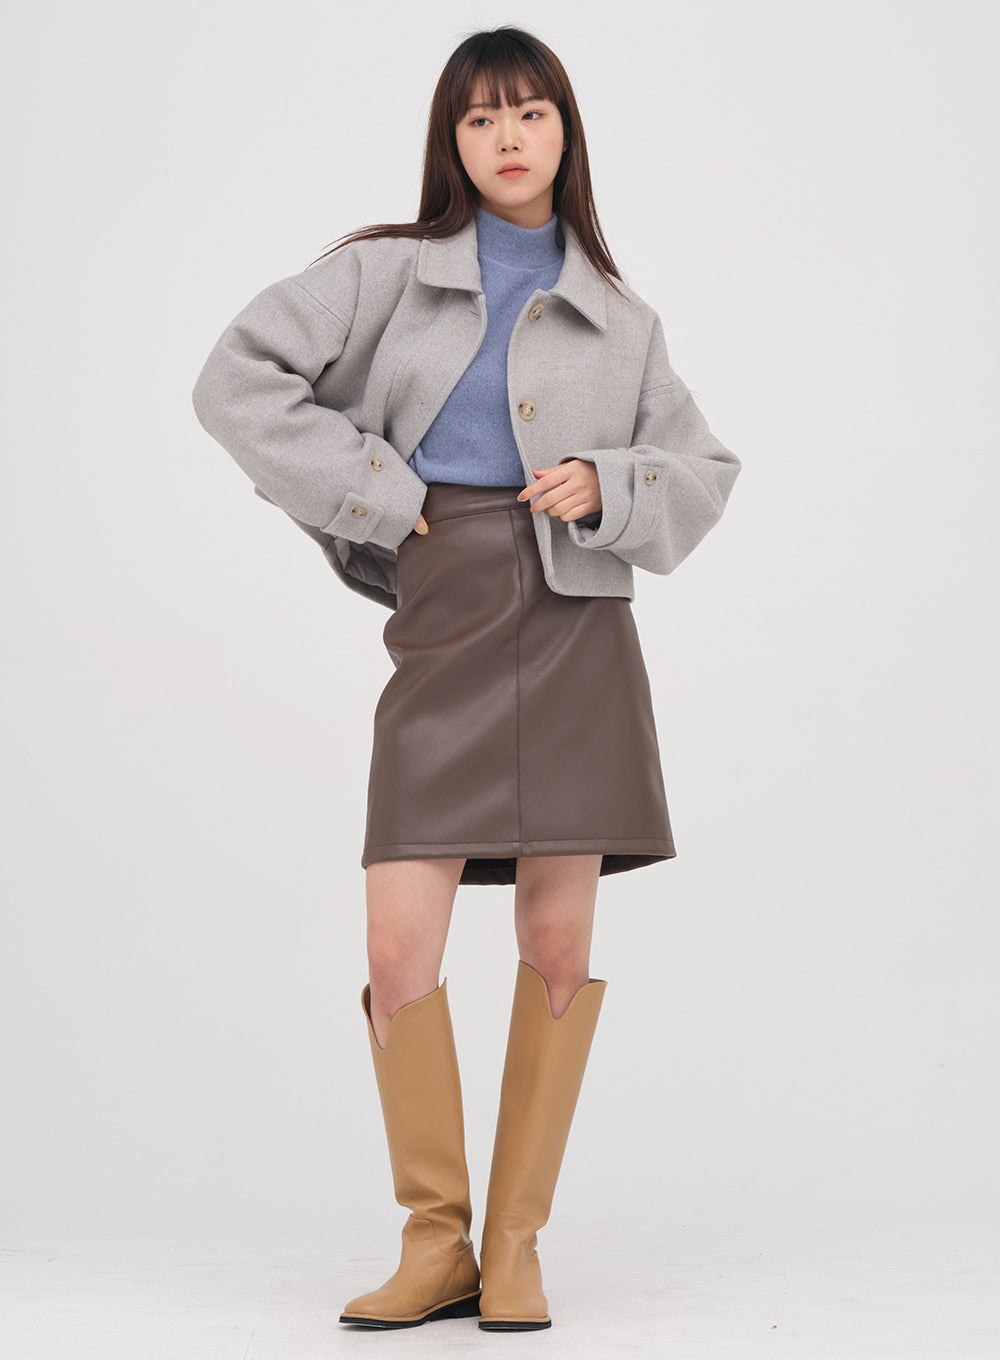 Faux Leather Mini Skirt #1210O123